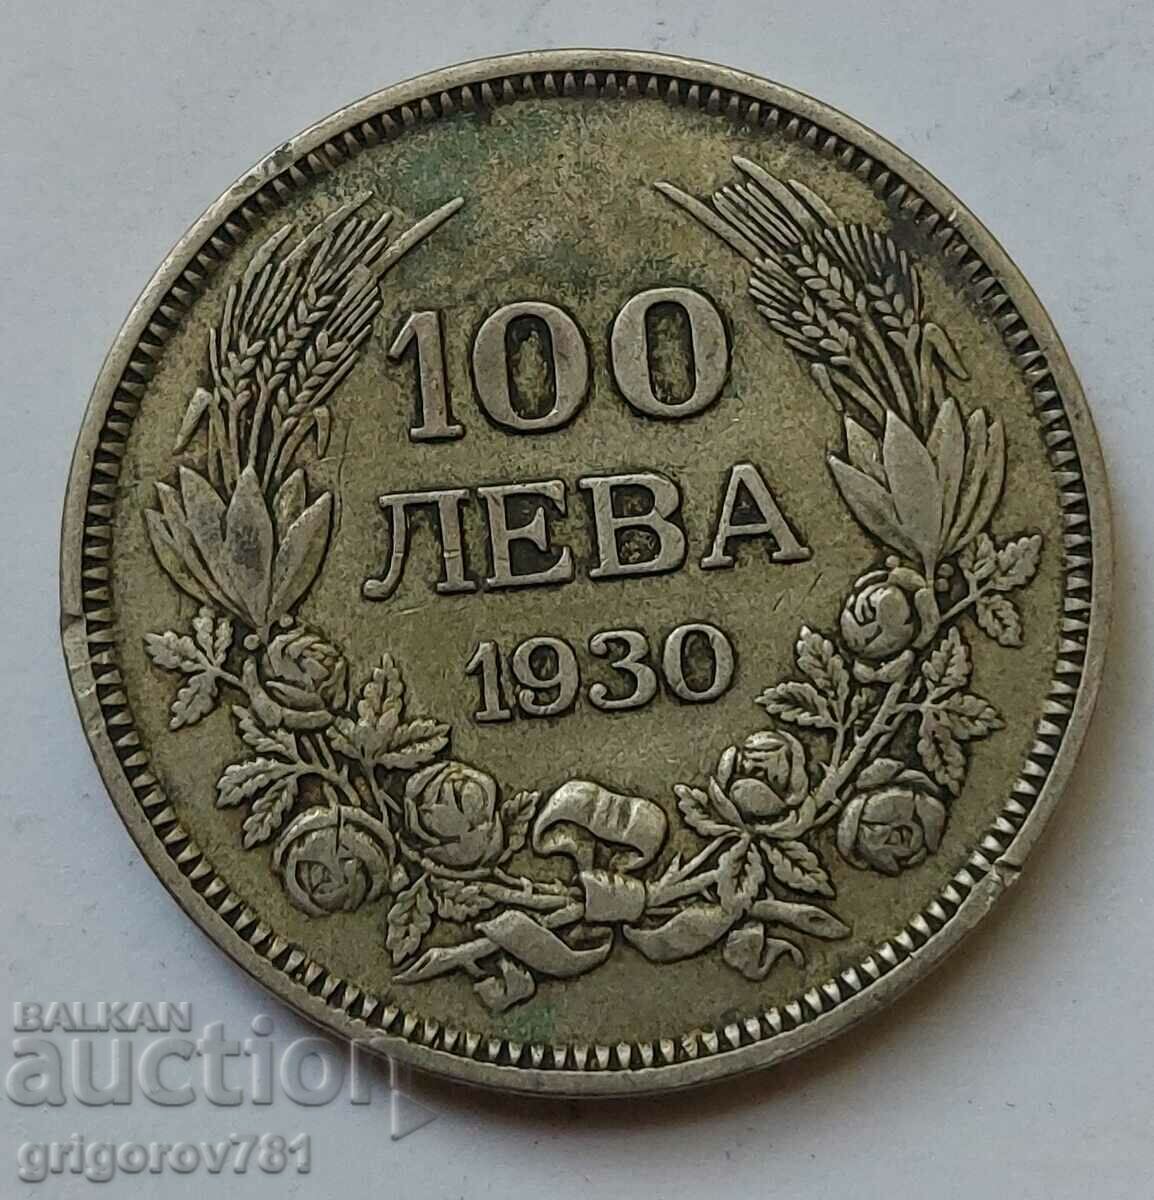 Ασήμι 100 λέβα Βουλγαρία 1930 - ασημένιο νόμισμα #49